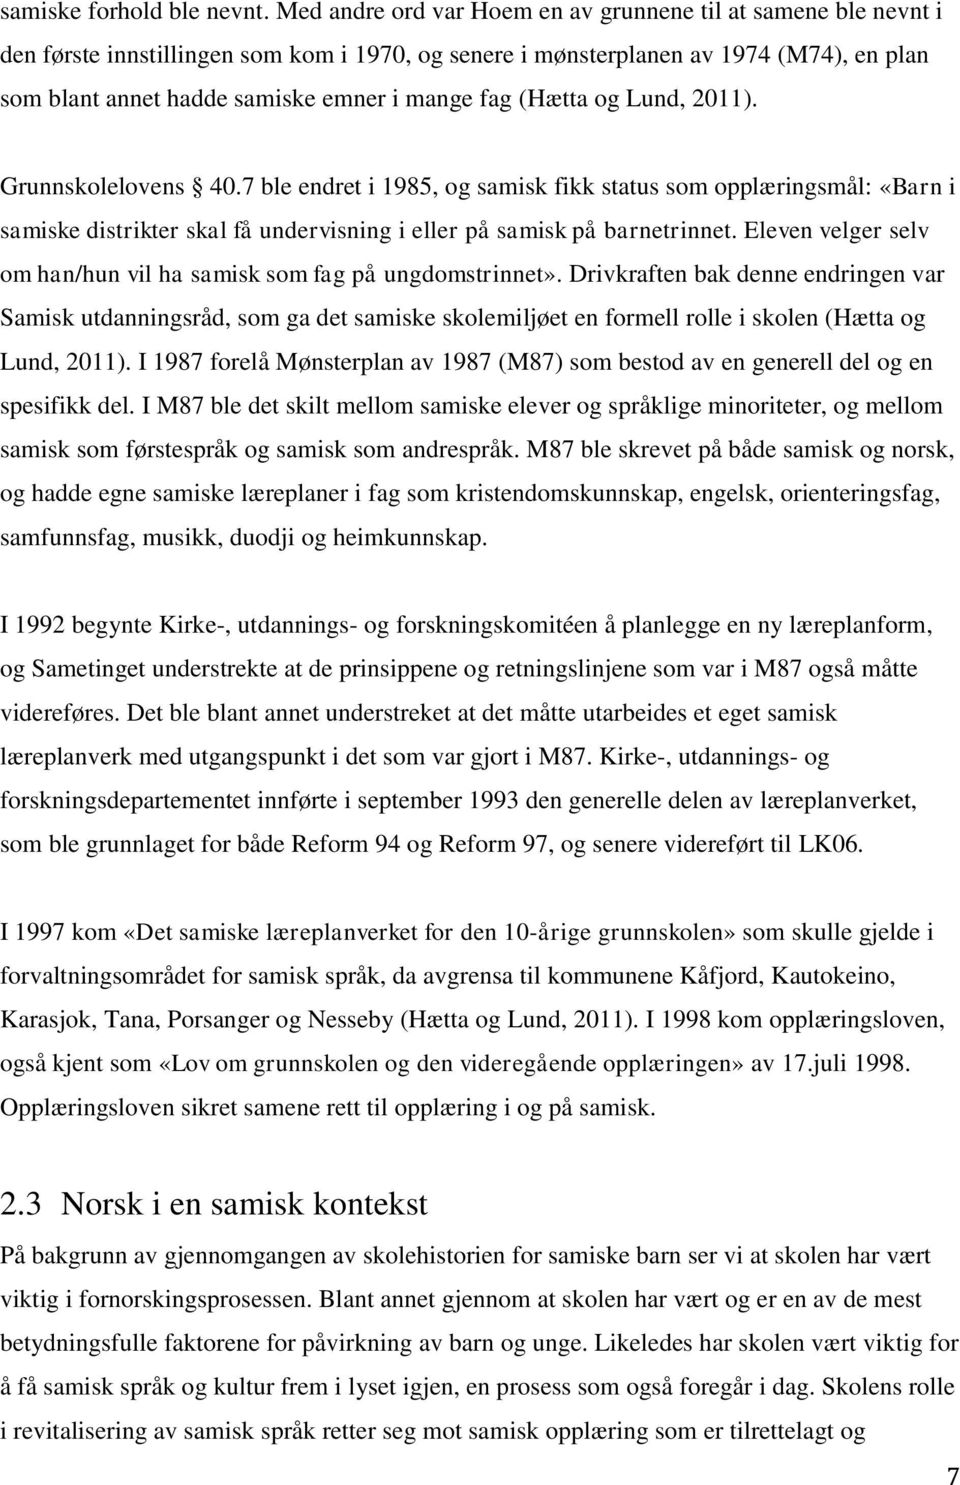 fag (Hætta og Lund, 2011). Grunnskolelovens 40.7 ble endret i 1985, og samisk fikk status som opplæringsmål: «Barn i samiske distrikter skal få undervisning i eller på samisk på barnetrinnet.